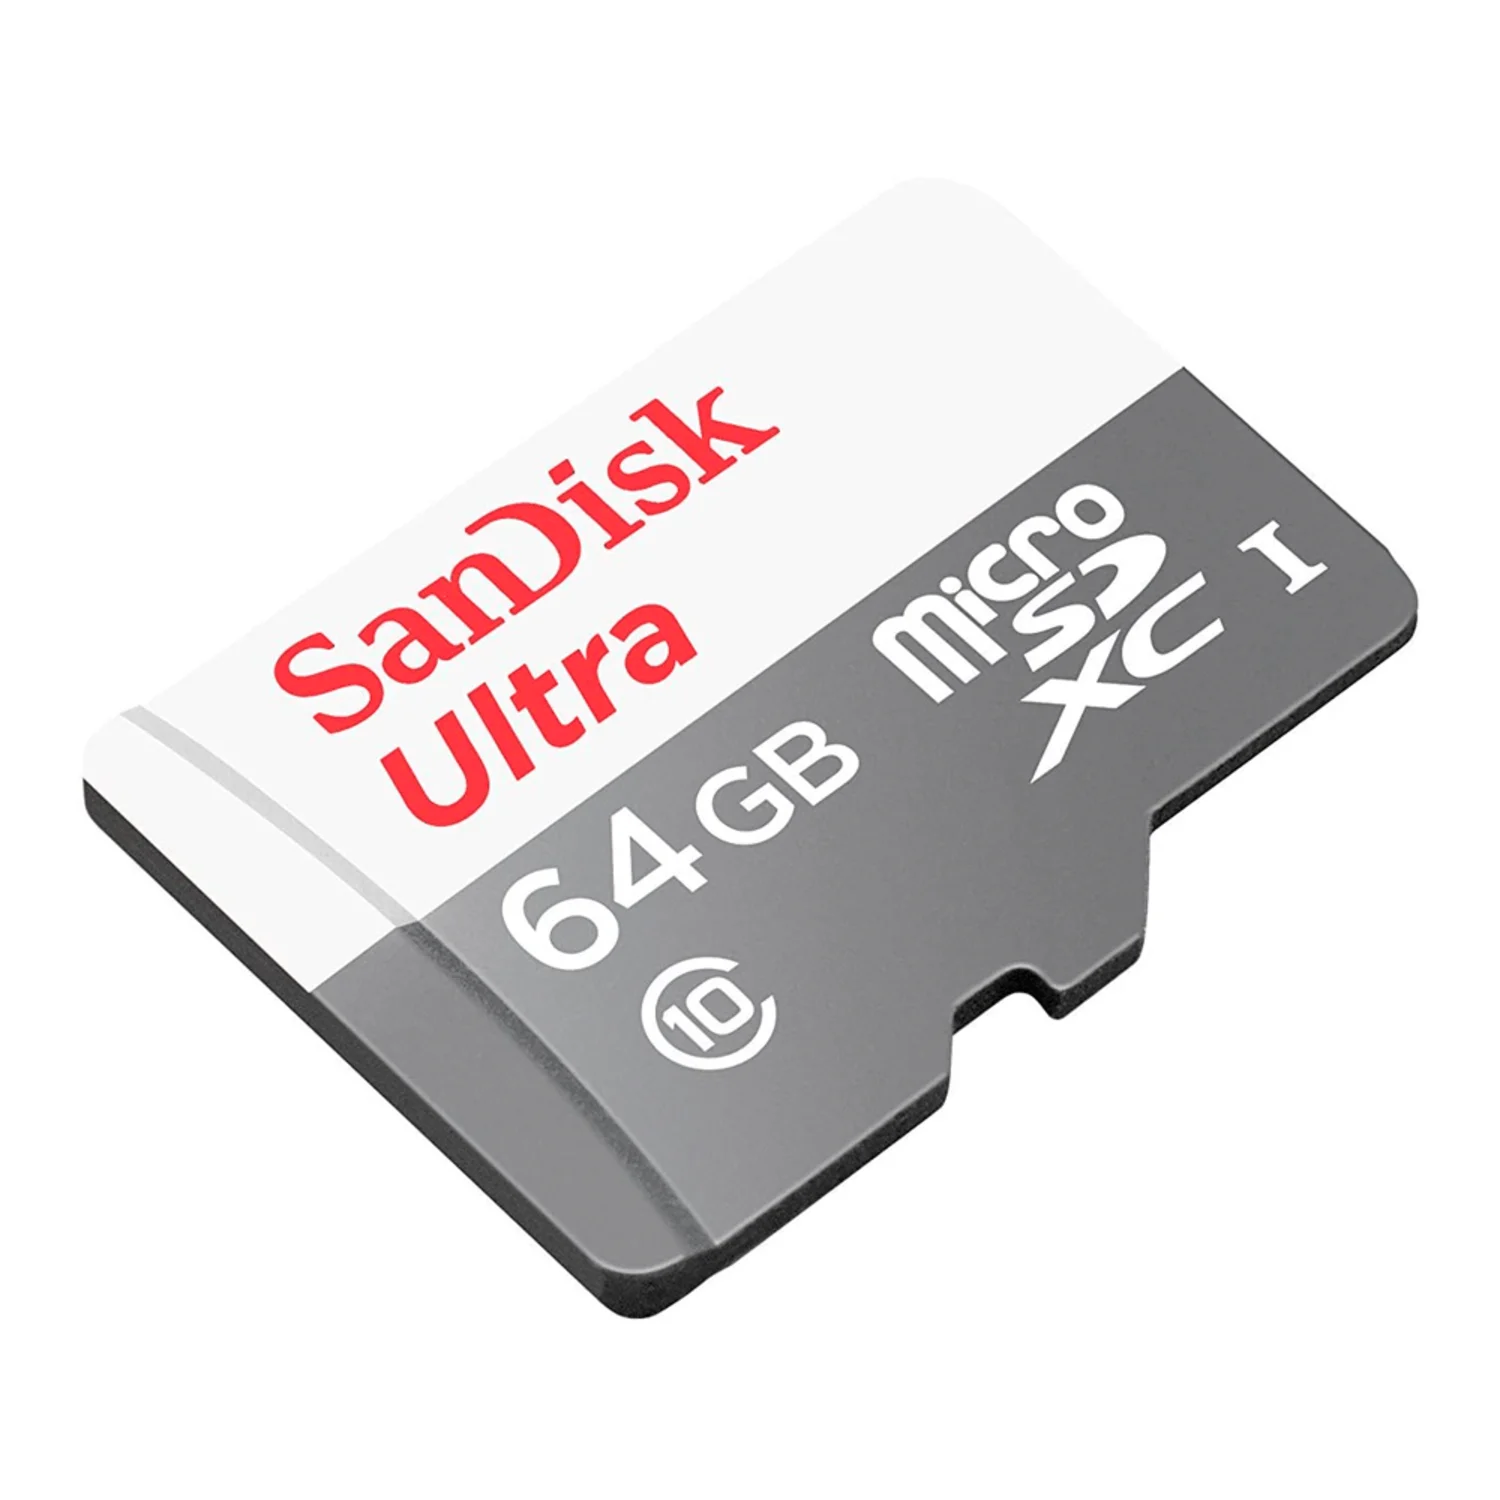 Cartão de memória Micro SD Sandisk Ultra C10 64GB / 100MBS / 2x1 - (SDSQUNR-064G-GN3MA)